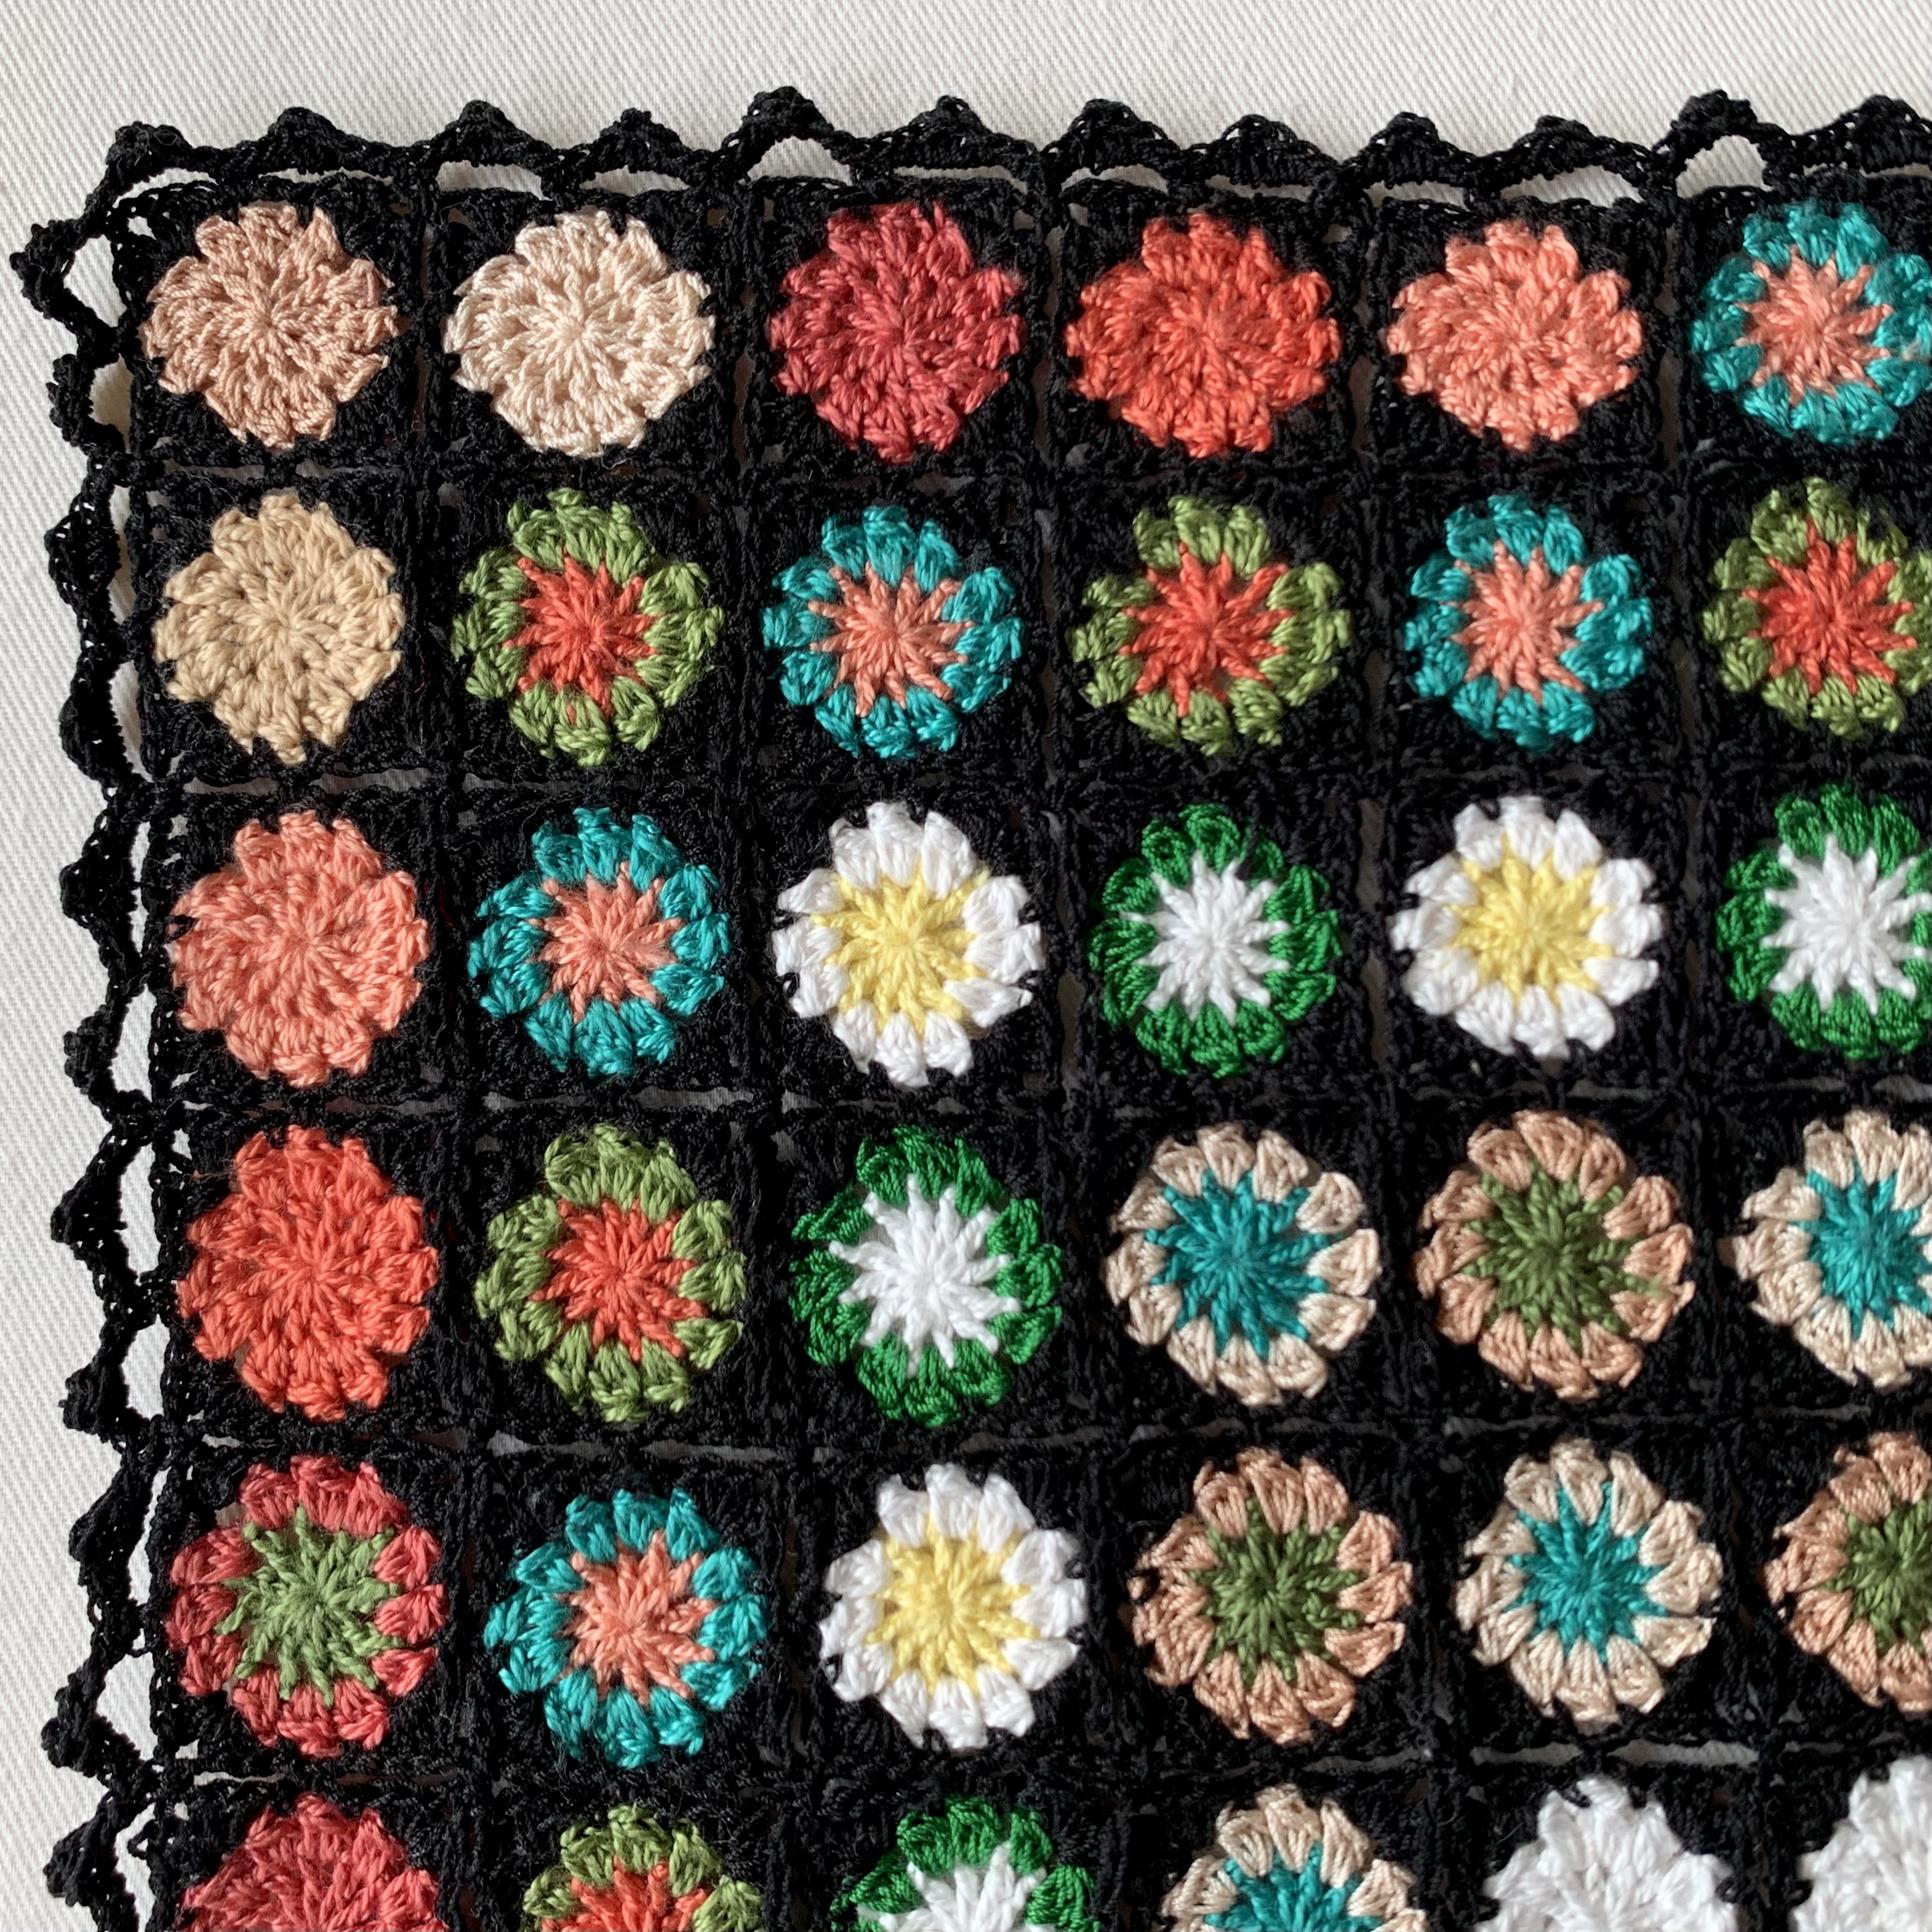 コットン毛糸で花のモチーフ編み マルチカバー ブランケット 